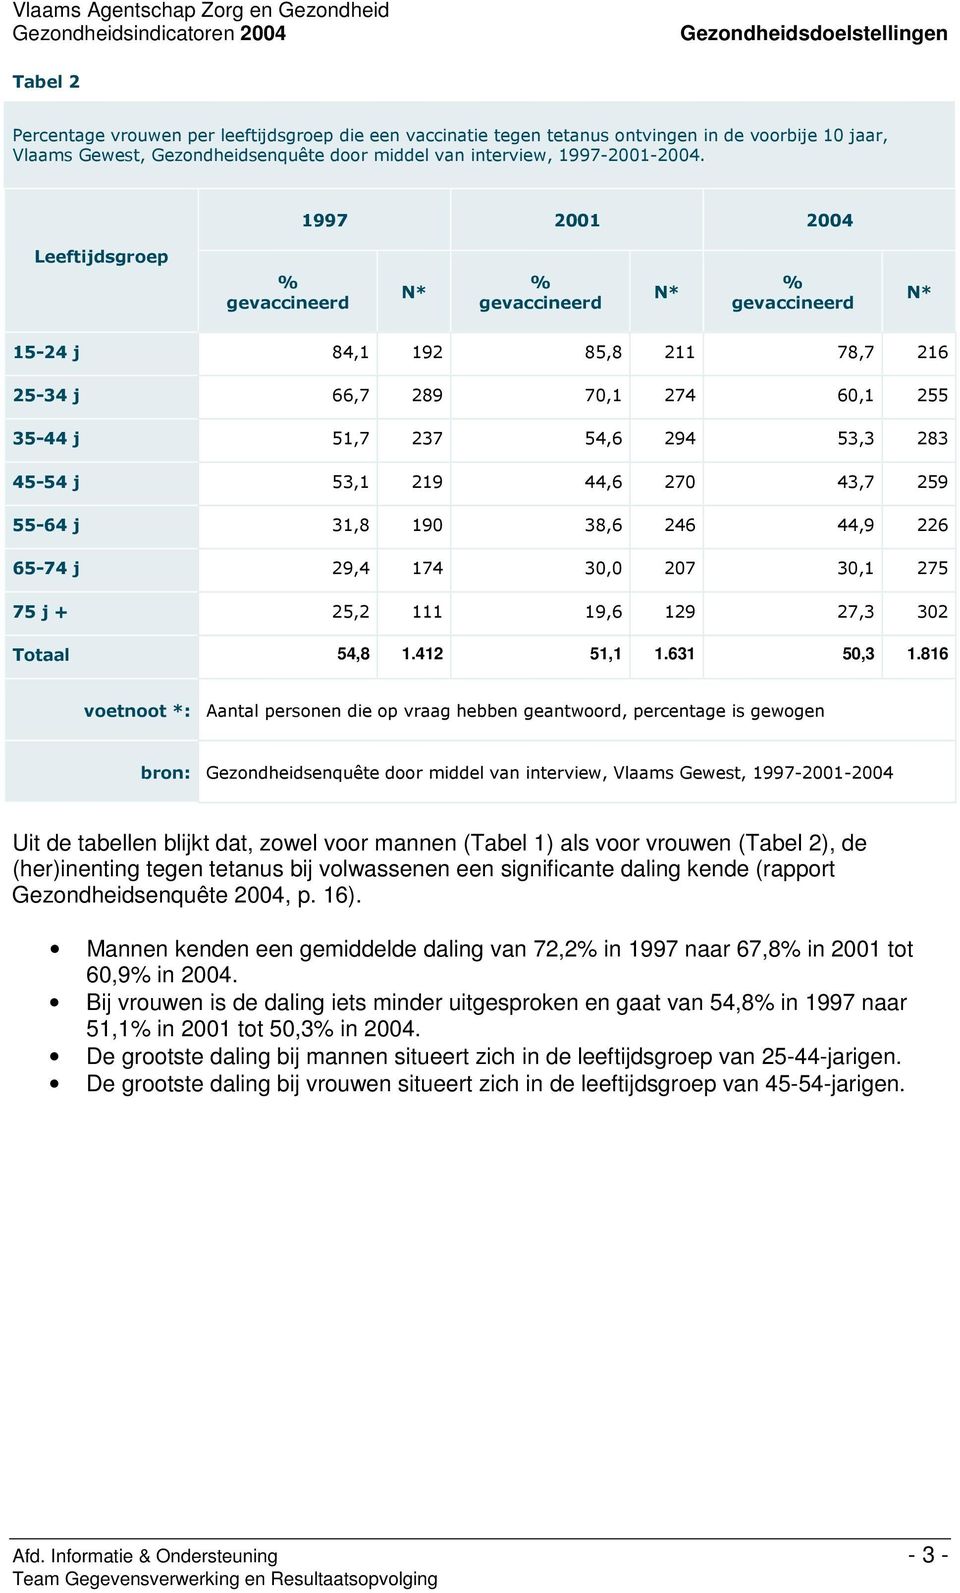 /++/++# Uit de tabellen blijkt dat, zowel voor mannen (Tabel 1) als voor vrouwen (Tabel 2), de (her)inenting tegen tetanus bij volwassenen een significante daling kende (rapport Gezondheidsenquête